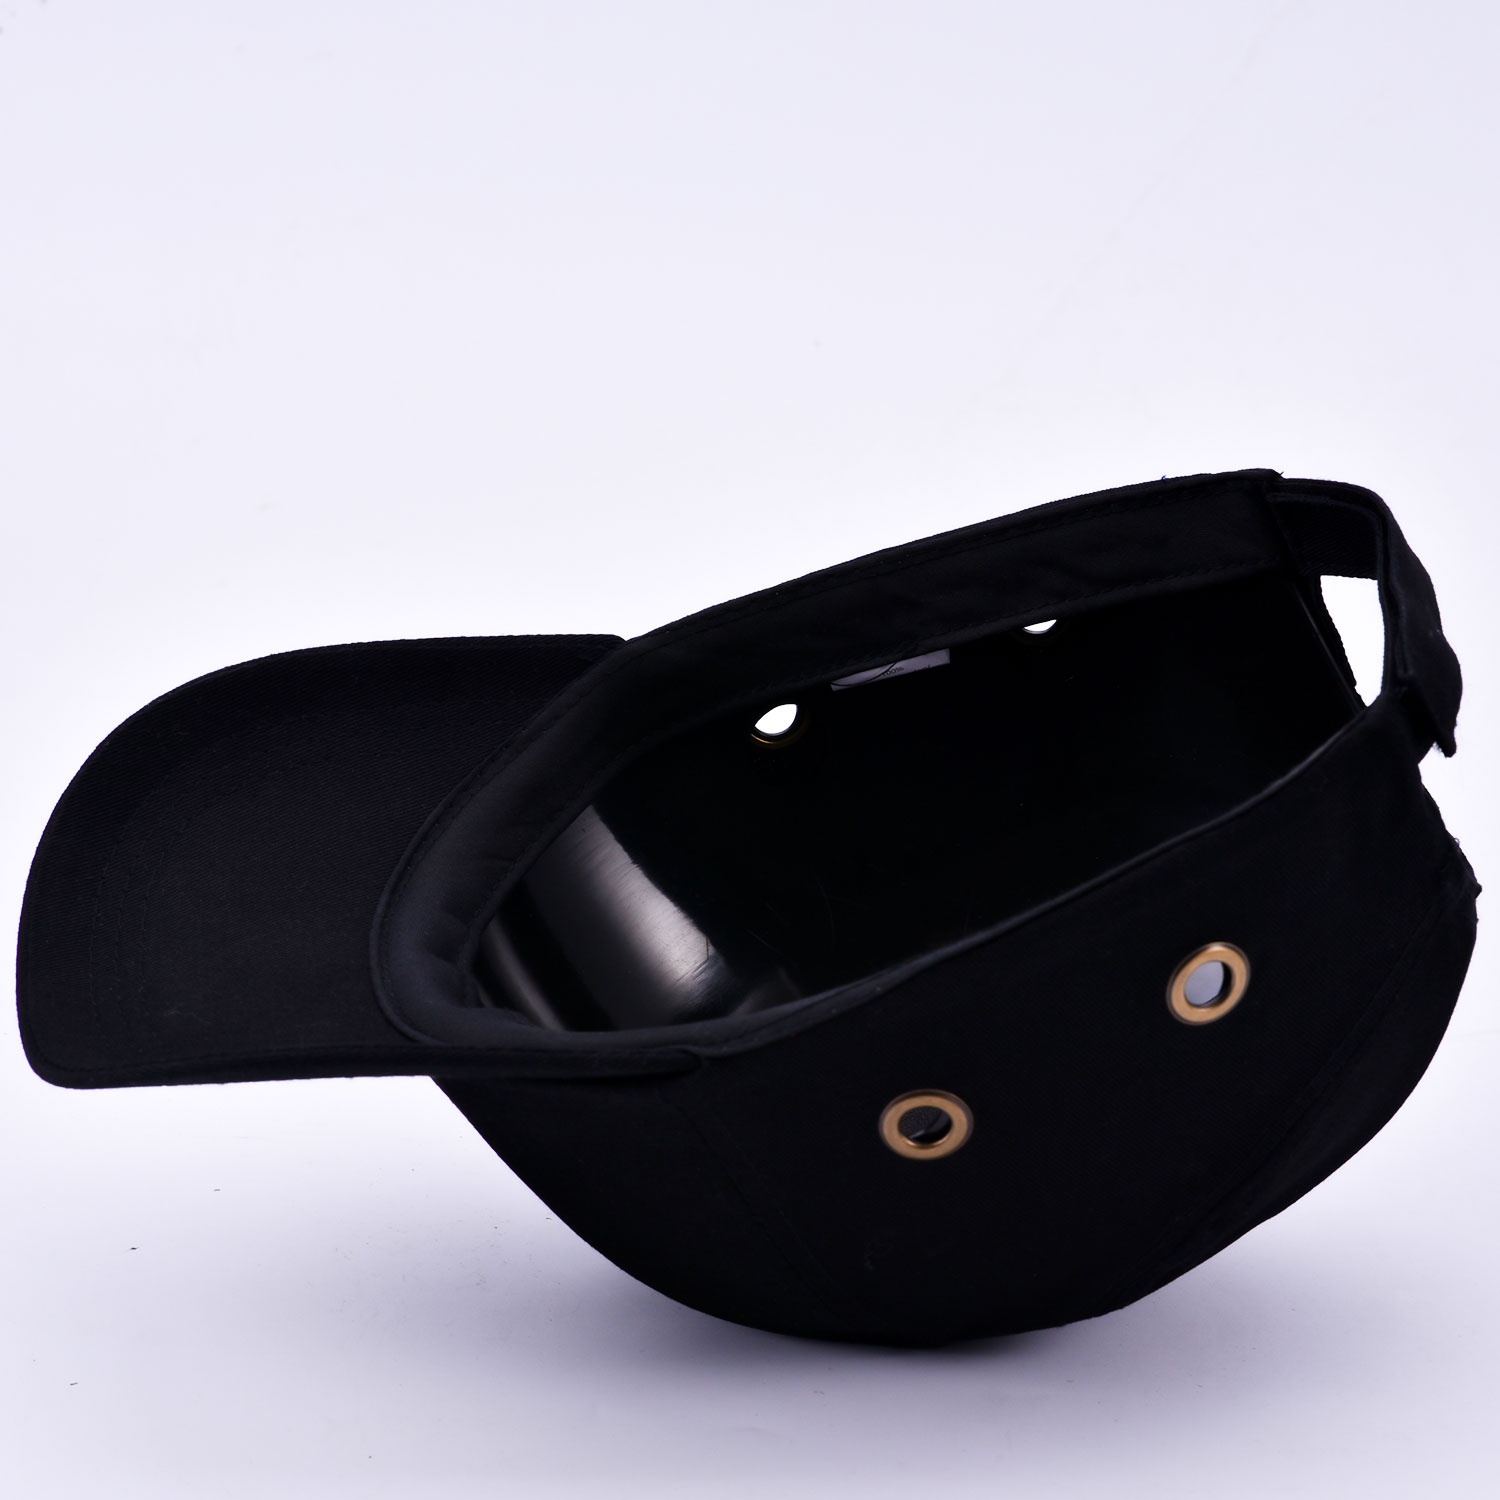 Gorra de seguridad con diseño de béisbol WH001 negro